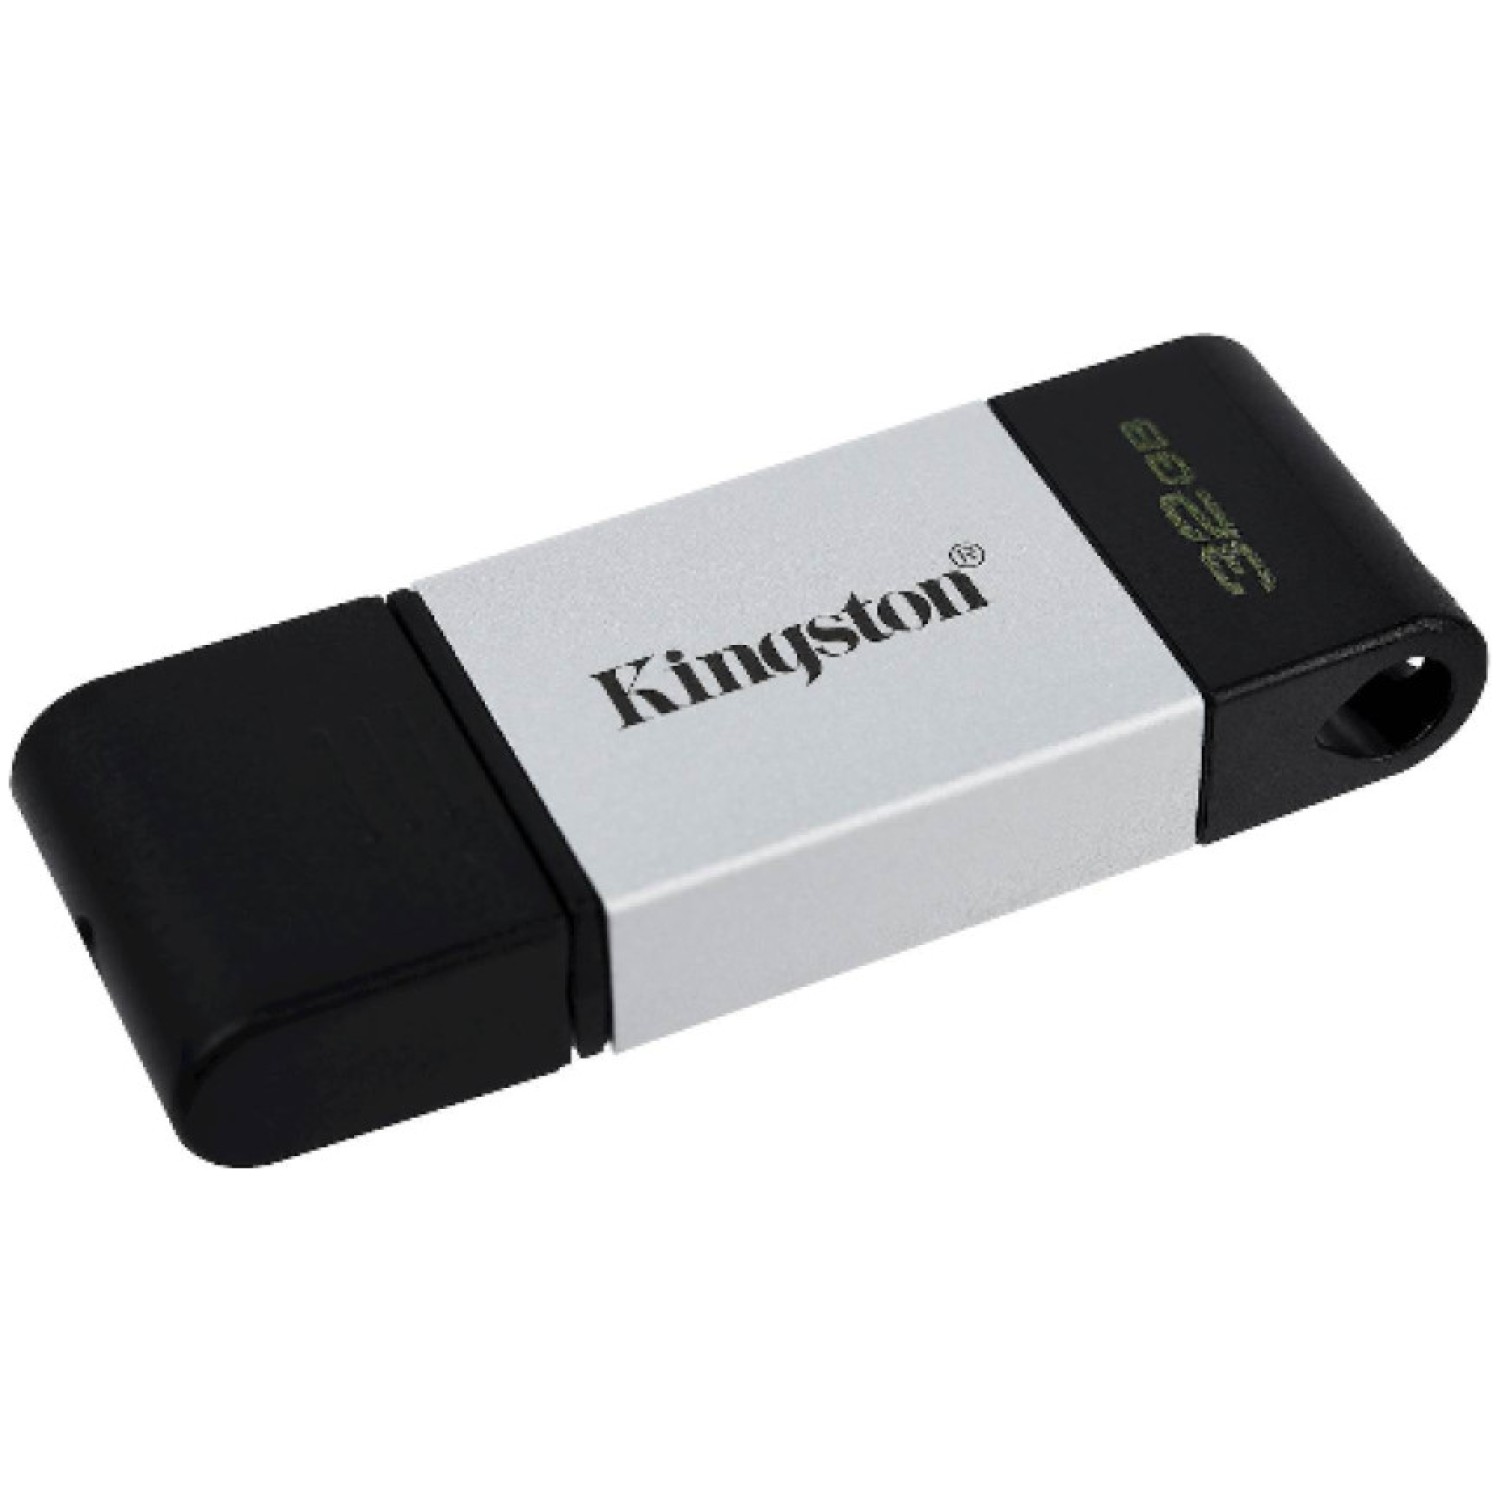 Spominski ključek 64GB USB 3.1/USB-C Kingston DT80 200MB/s 60MB/s plastičen s pokrovčkom srebrno-črn (DT80/64GB)